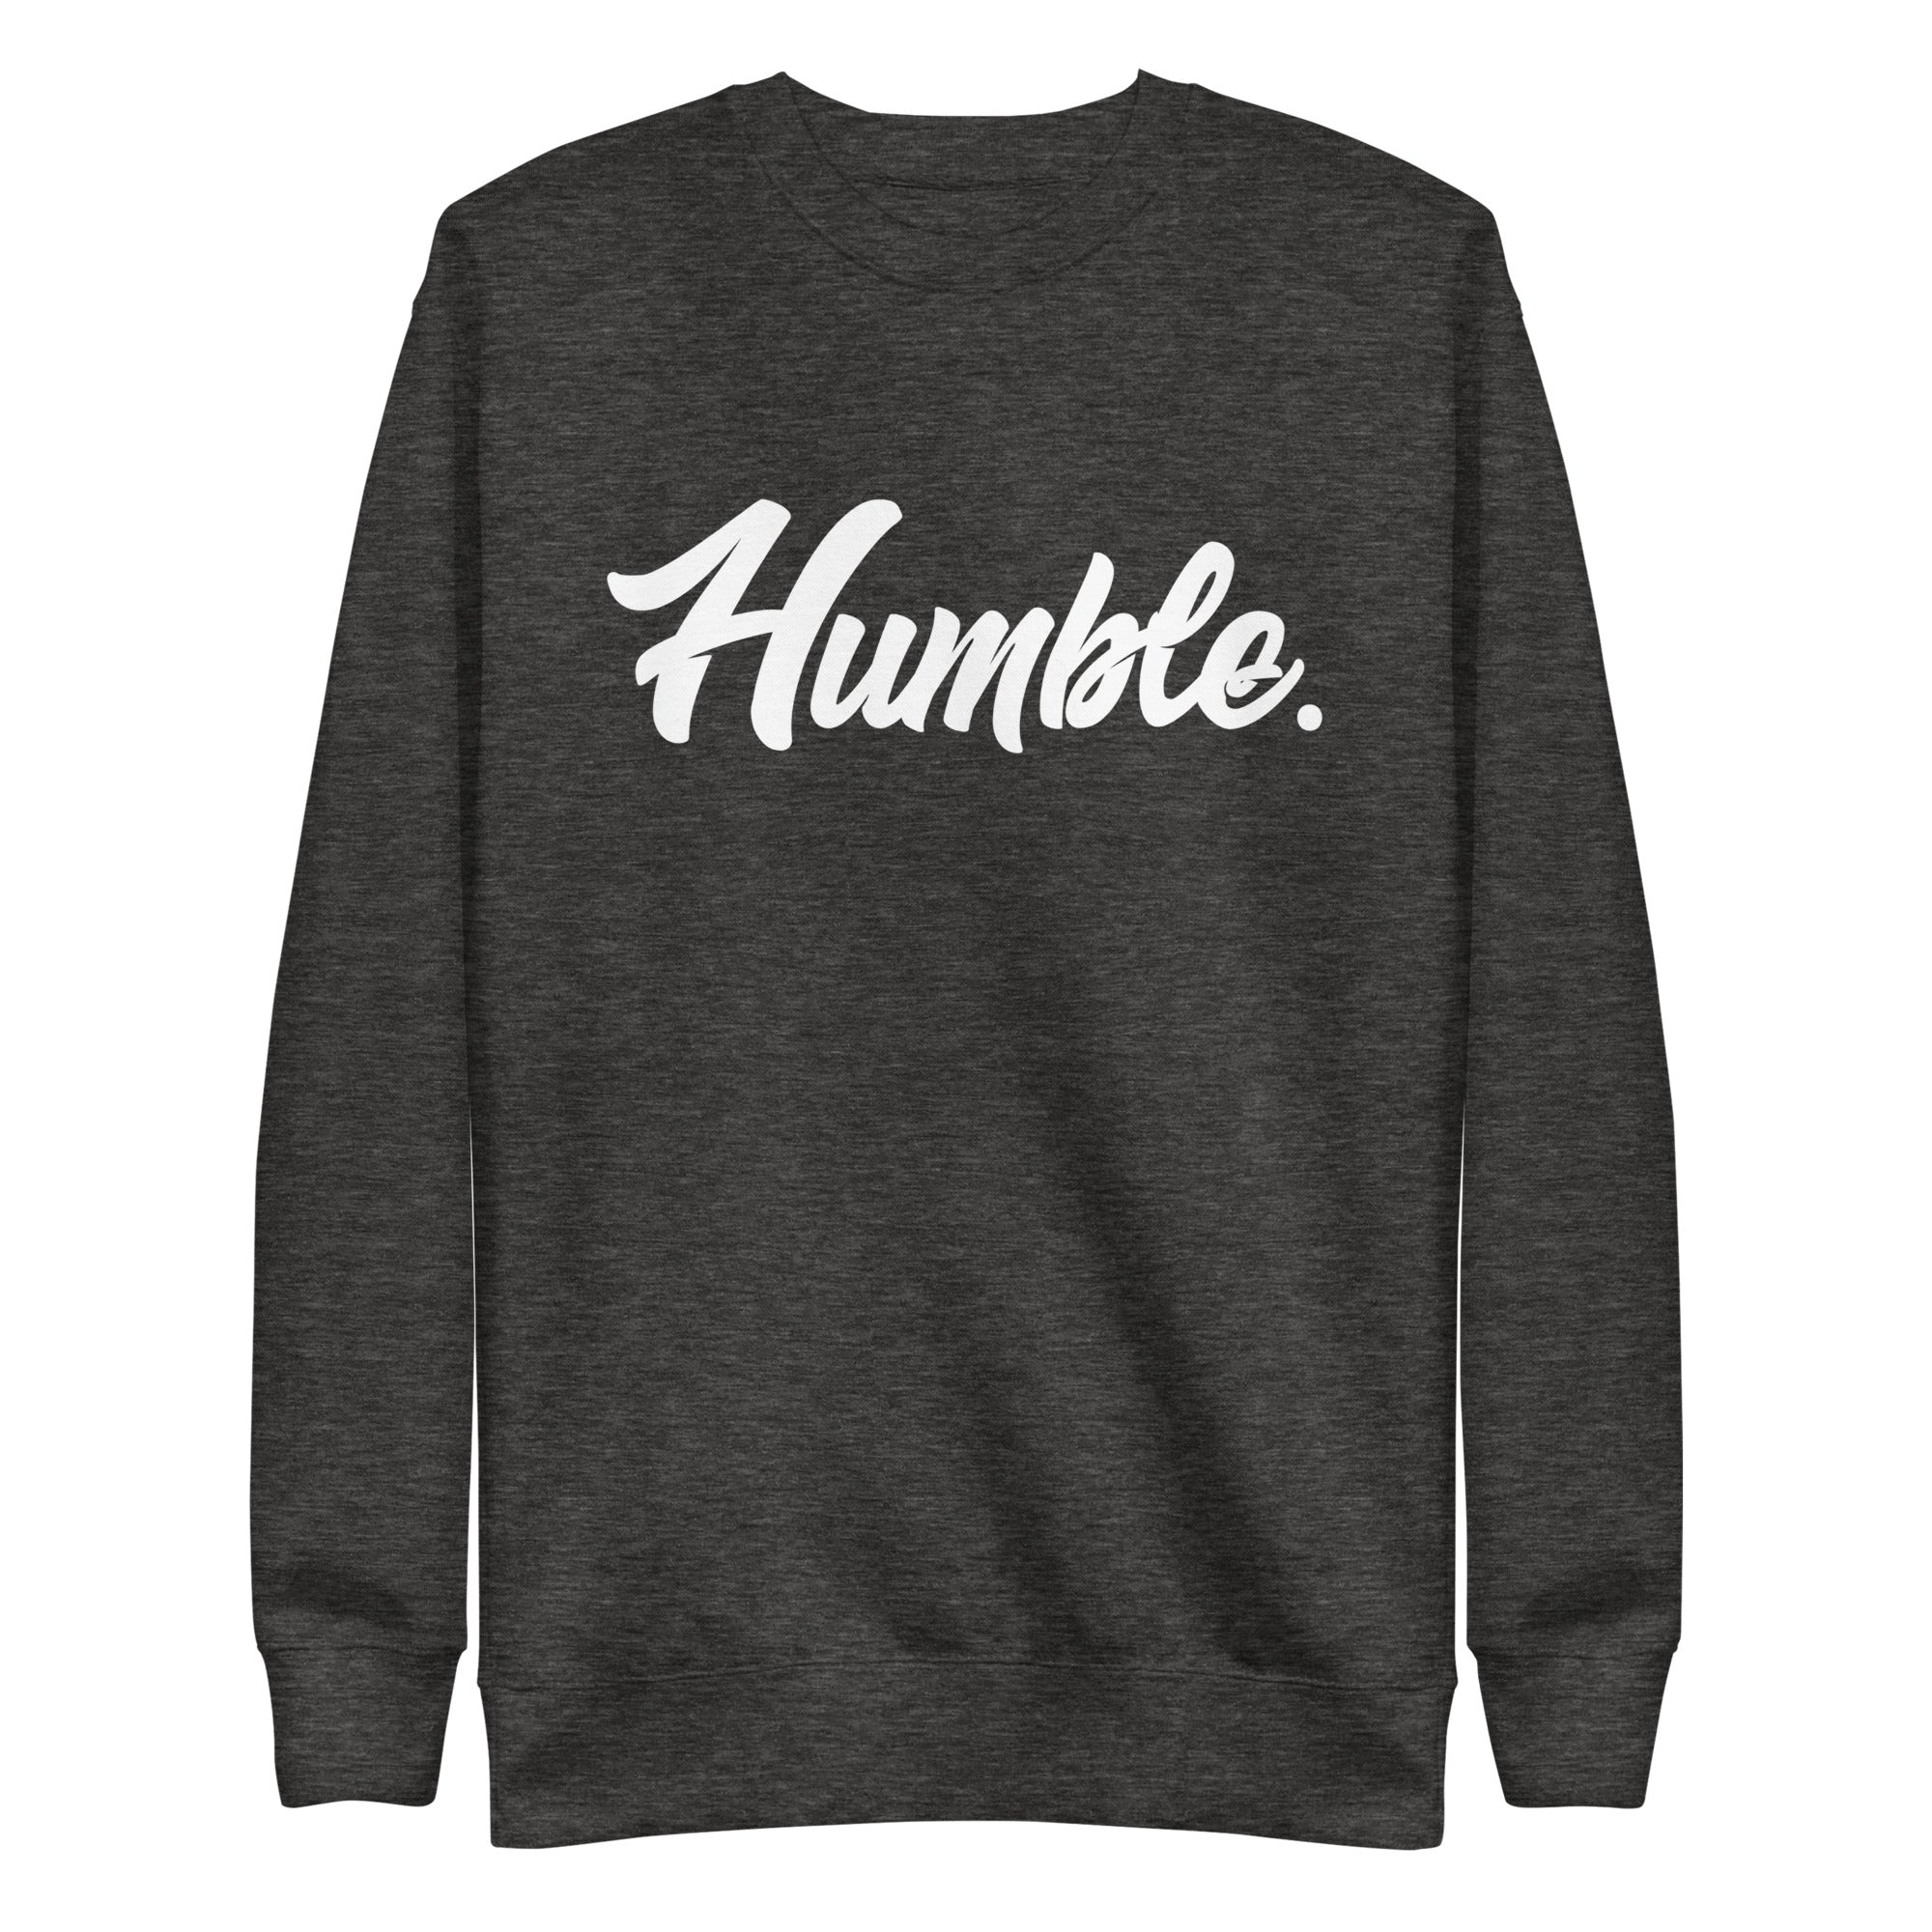 Humble. Premium Sweatshirt